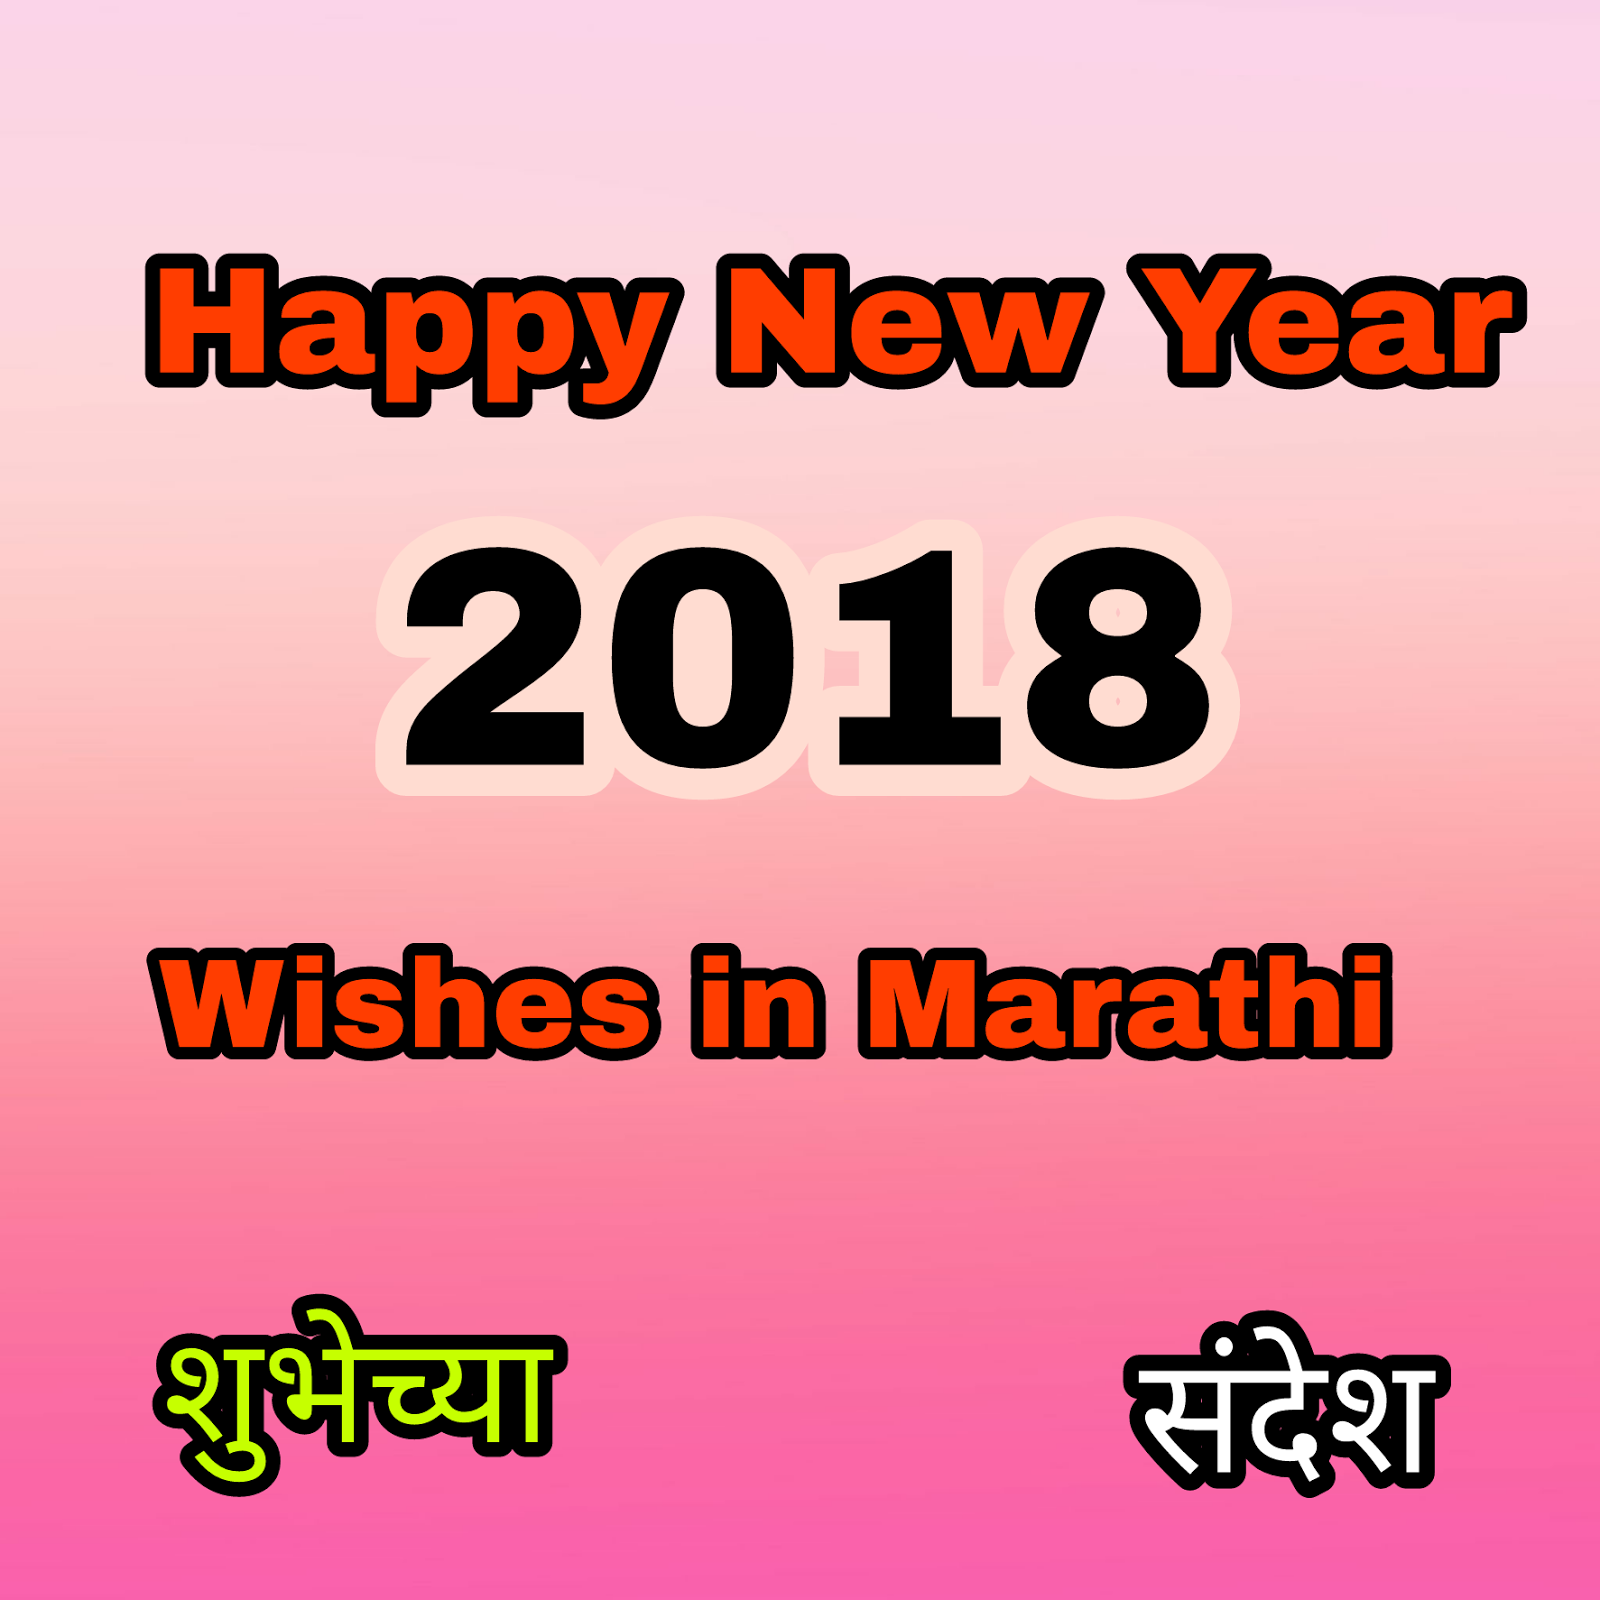 Happy New Year Wishes In Marathi. Latest Marathi Shayri, wishes,Image